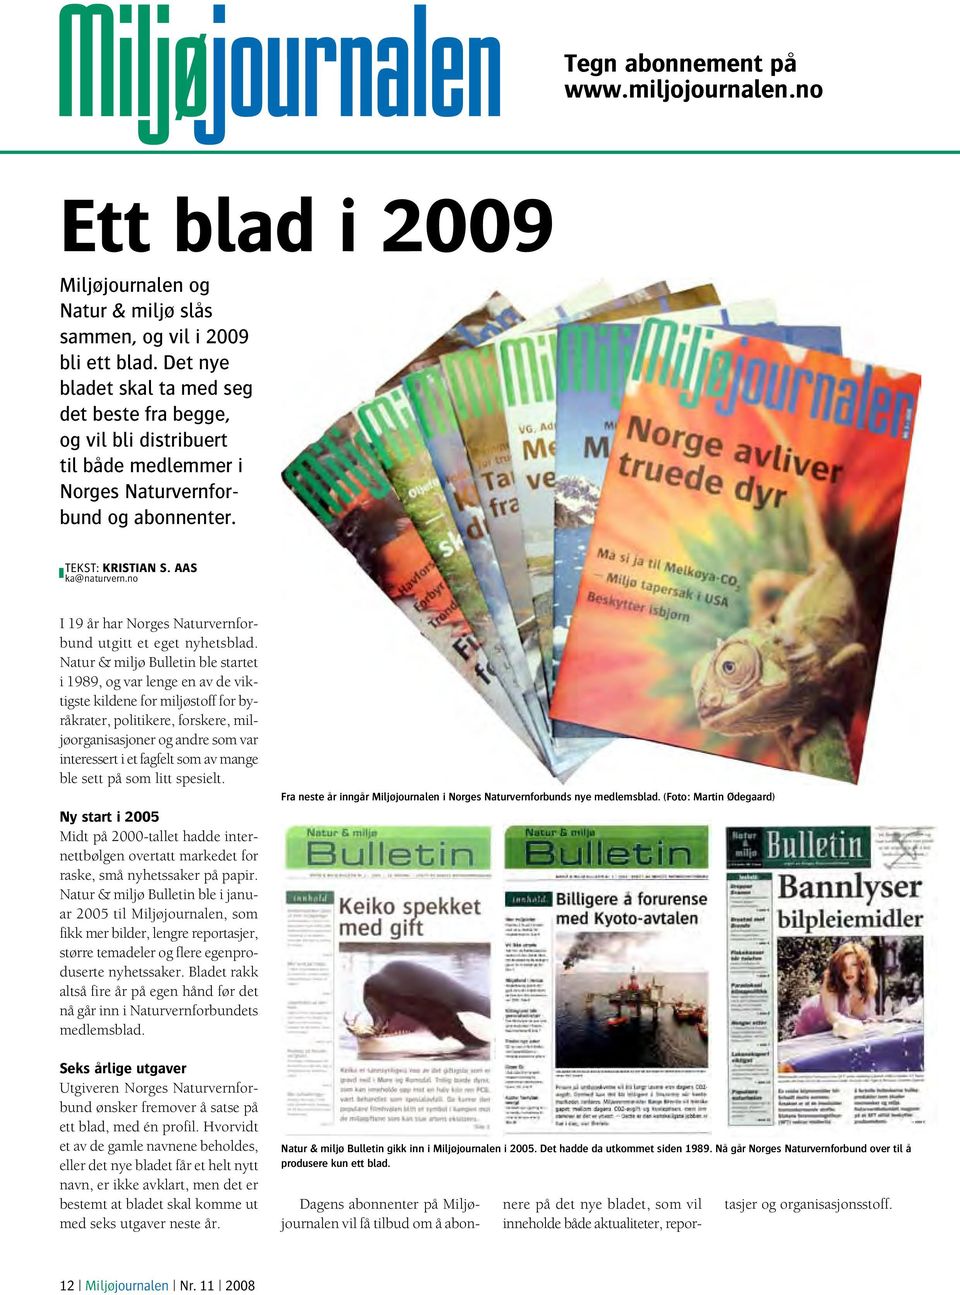 no I 19 år har Norges Naturvernforbund utgitt et eget nyhetsblad.